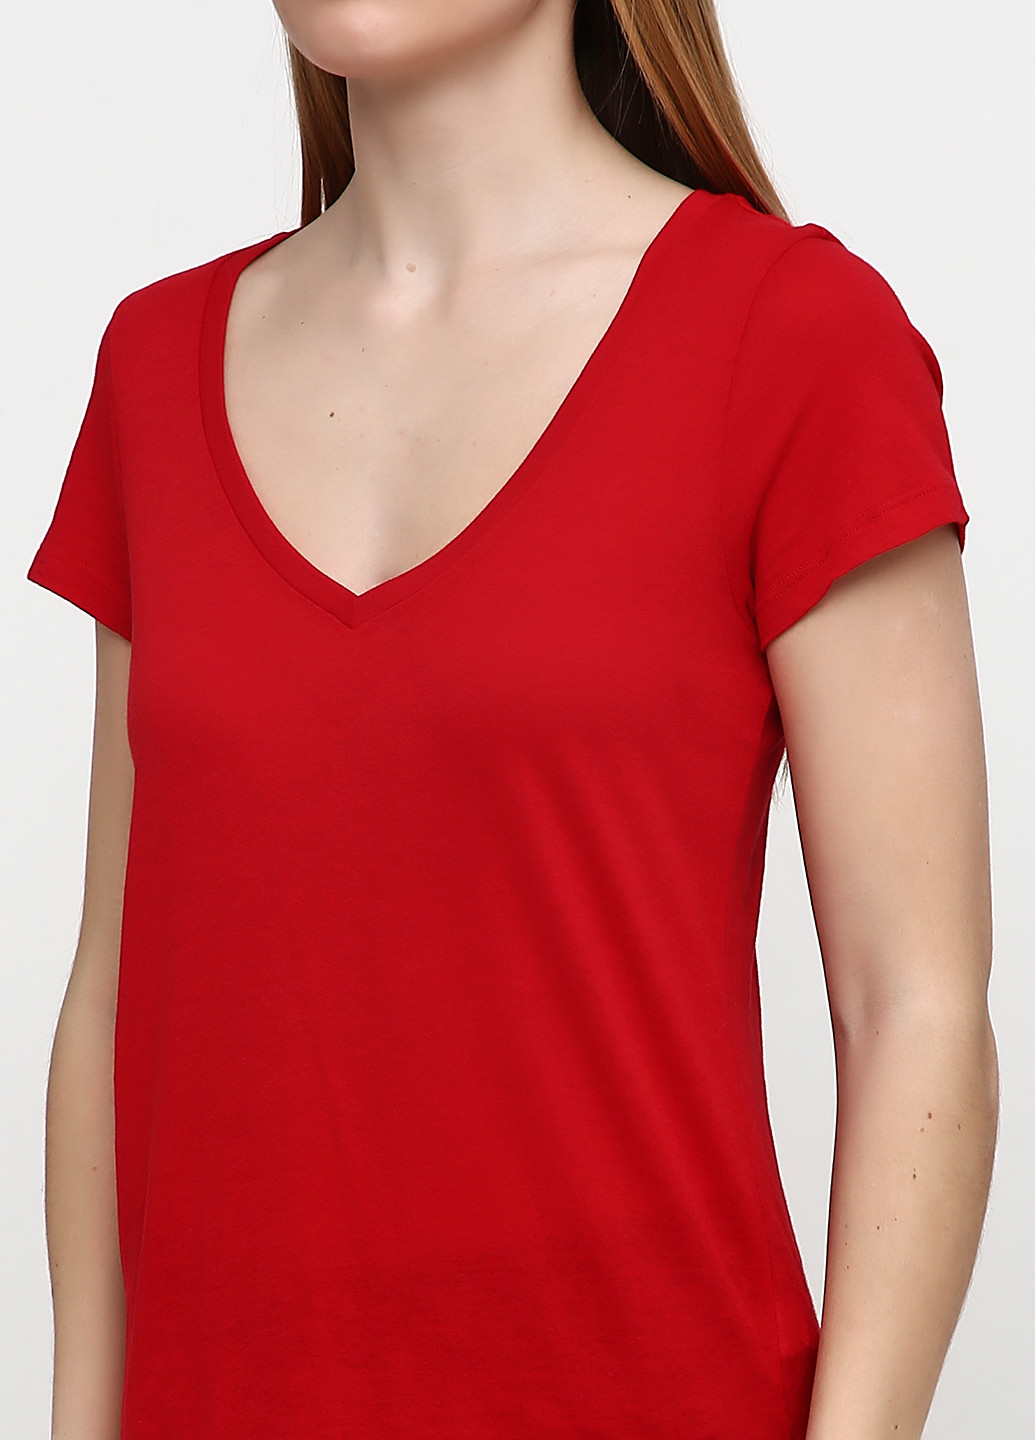 Червона літня футболка Ralph Lauren